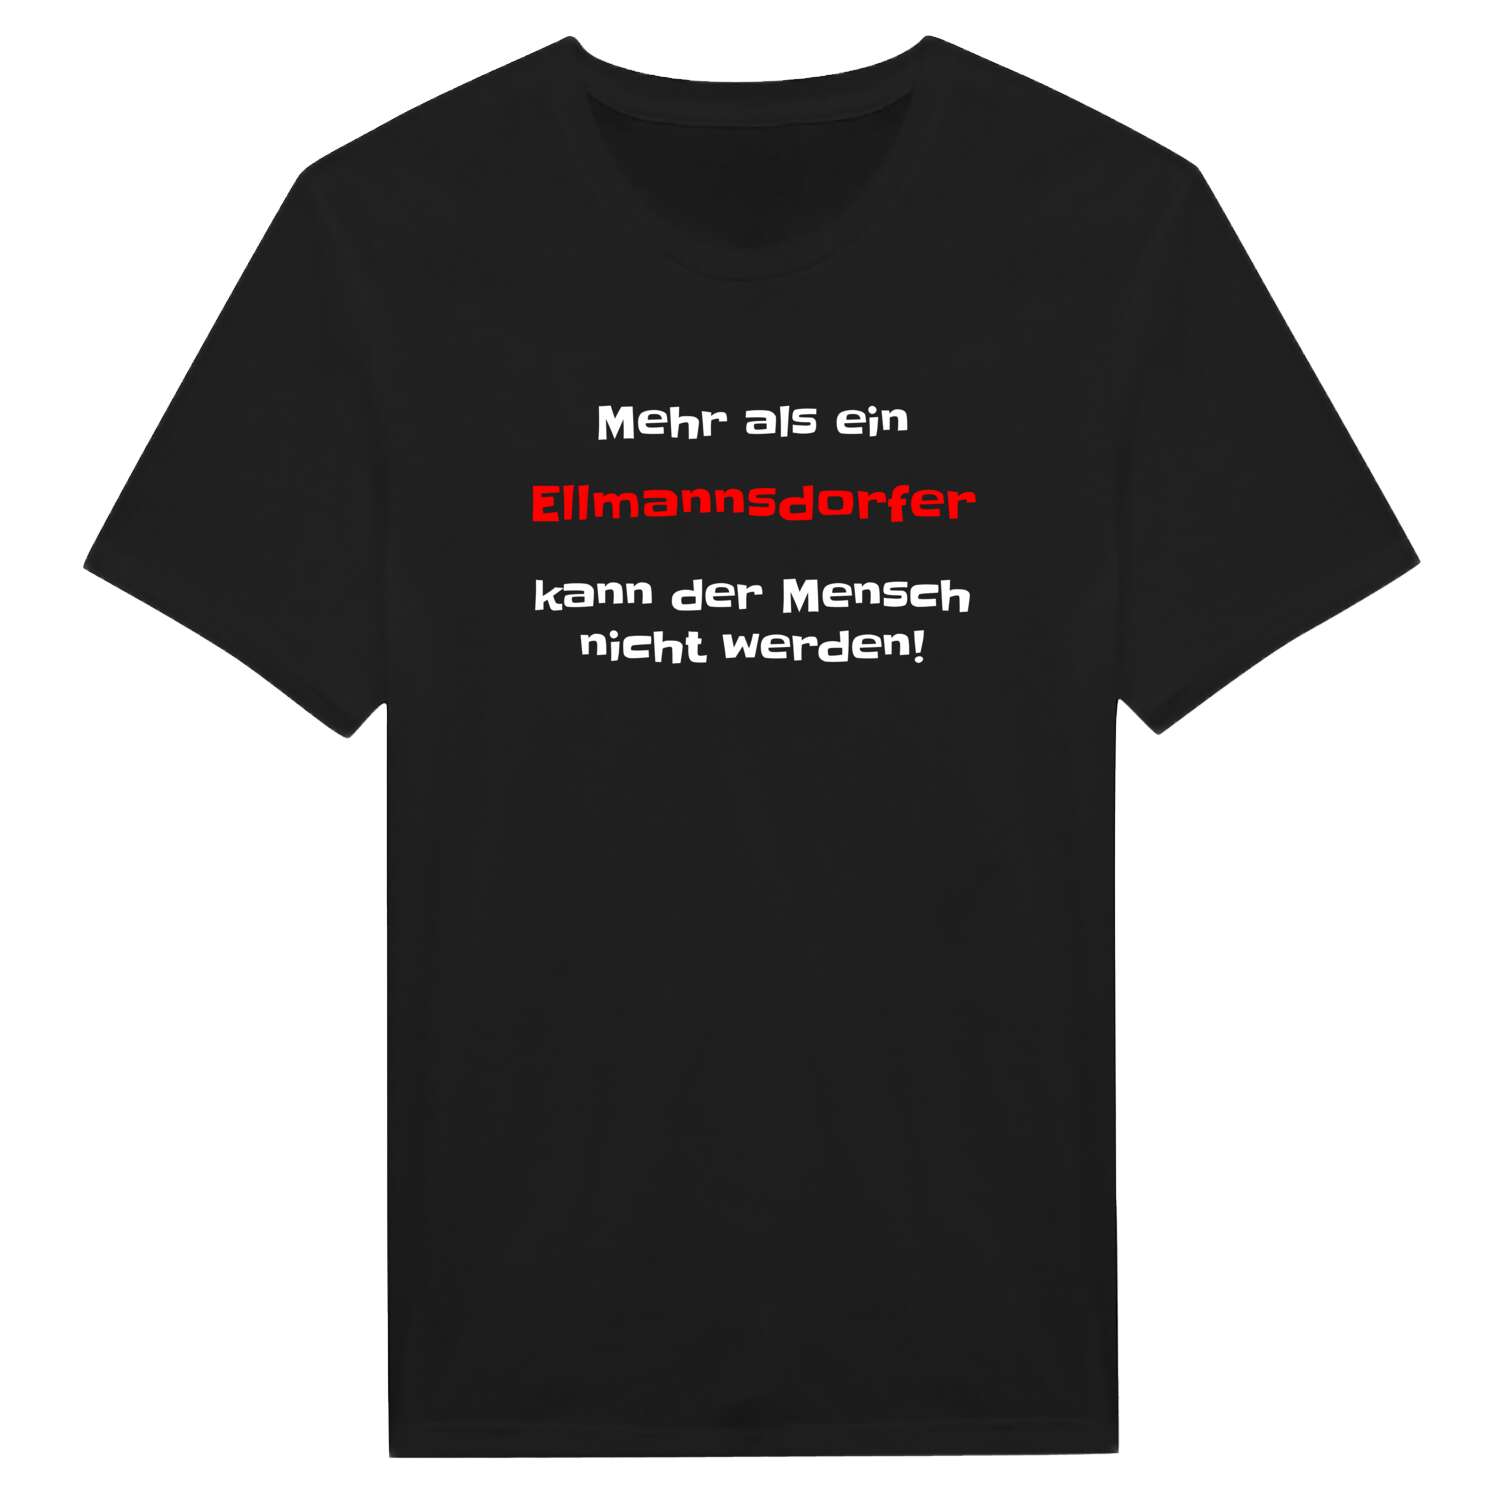 Ellmannsdorf T-Shirt »Mehr als ein«